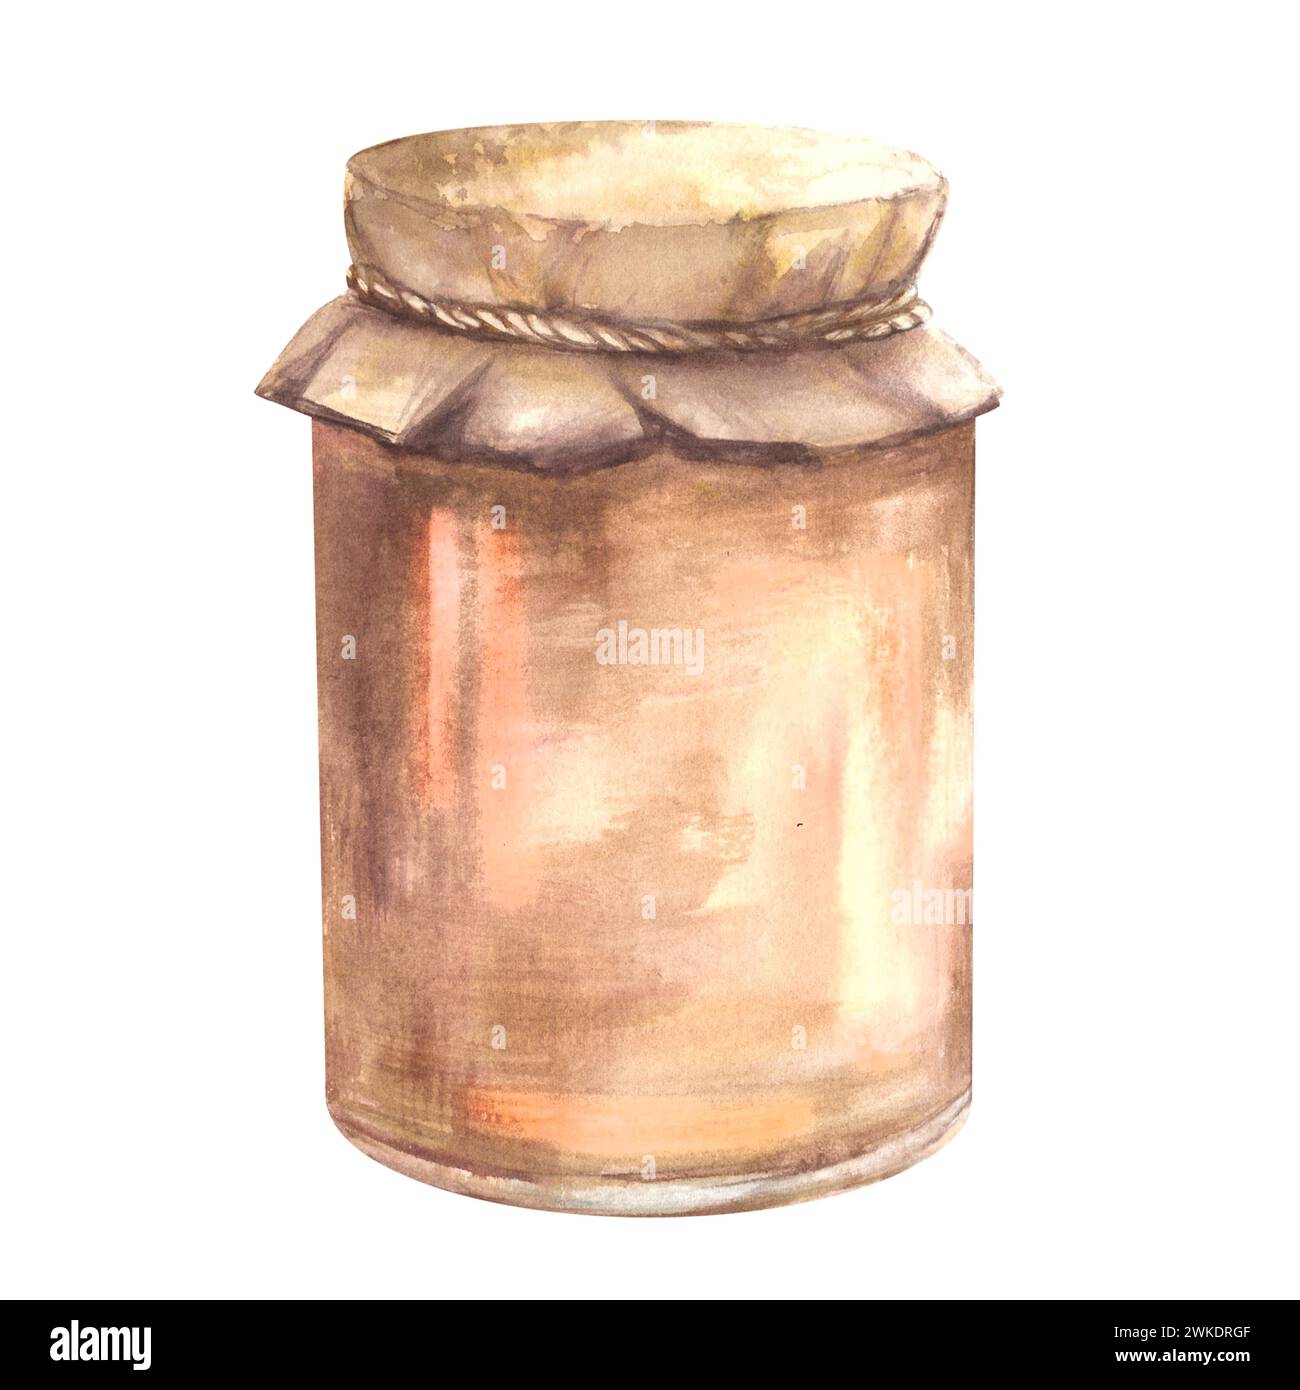 Aquarell-Feigen-Marmelade in einem Glasgefäß, frische ganze und geschnittene Feigen und Scheiben auf Aquarellspritzern Hintergrund. Handgezeichnete Illustration Fruchtgelee und Stockfoto